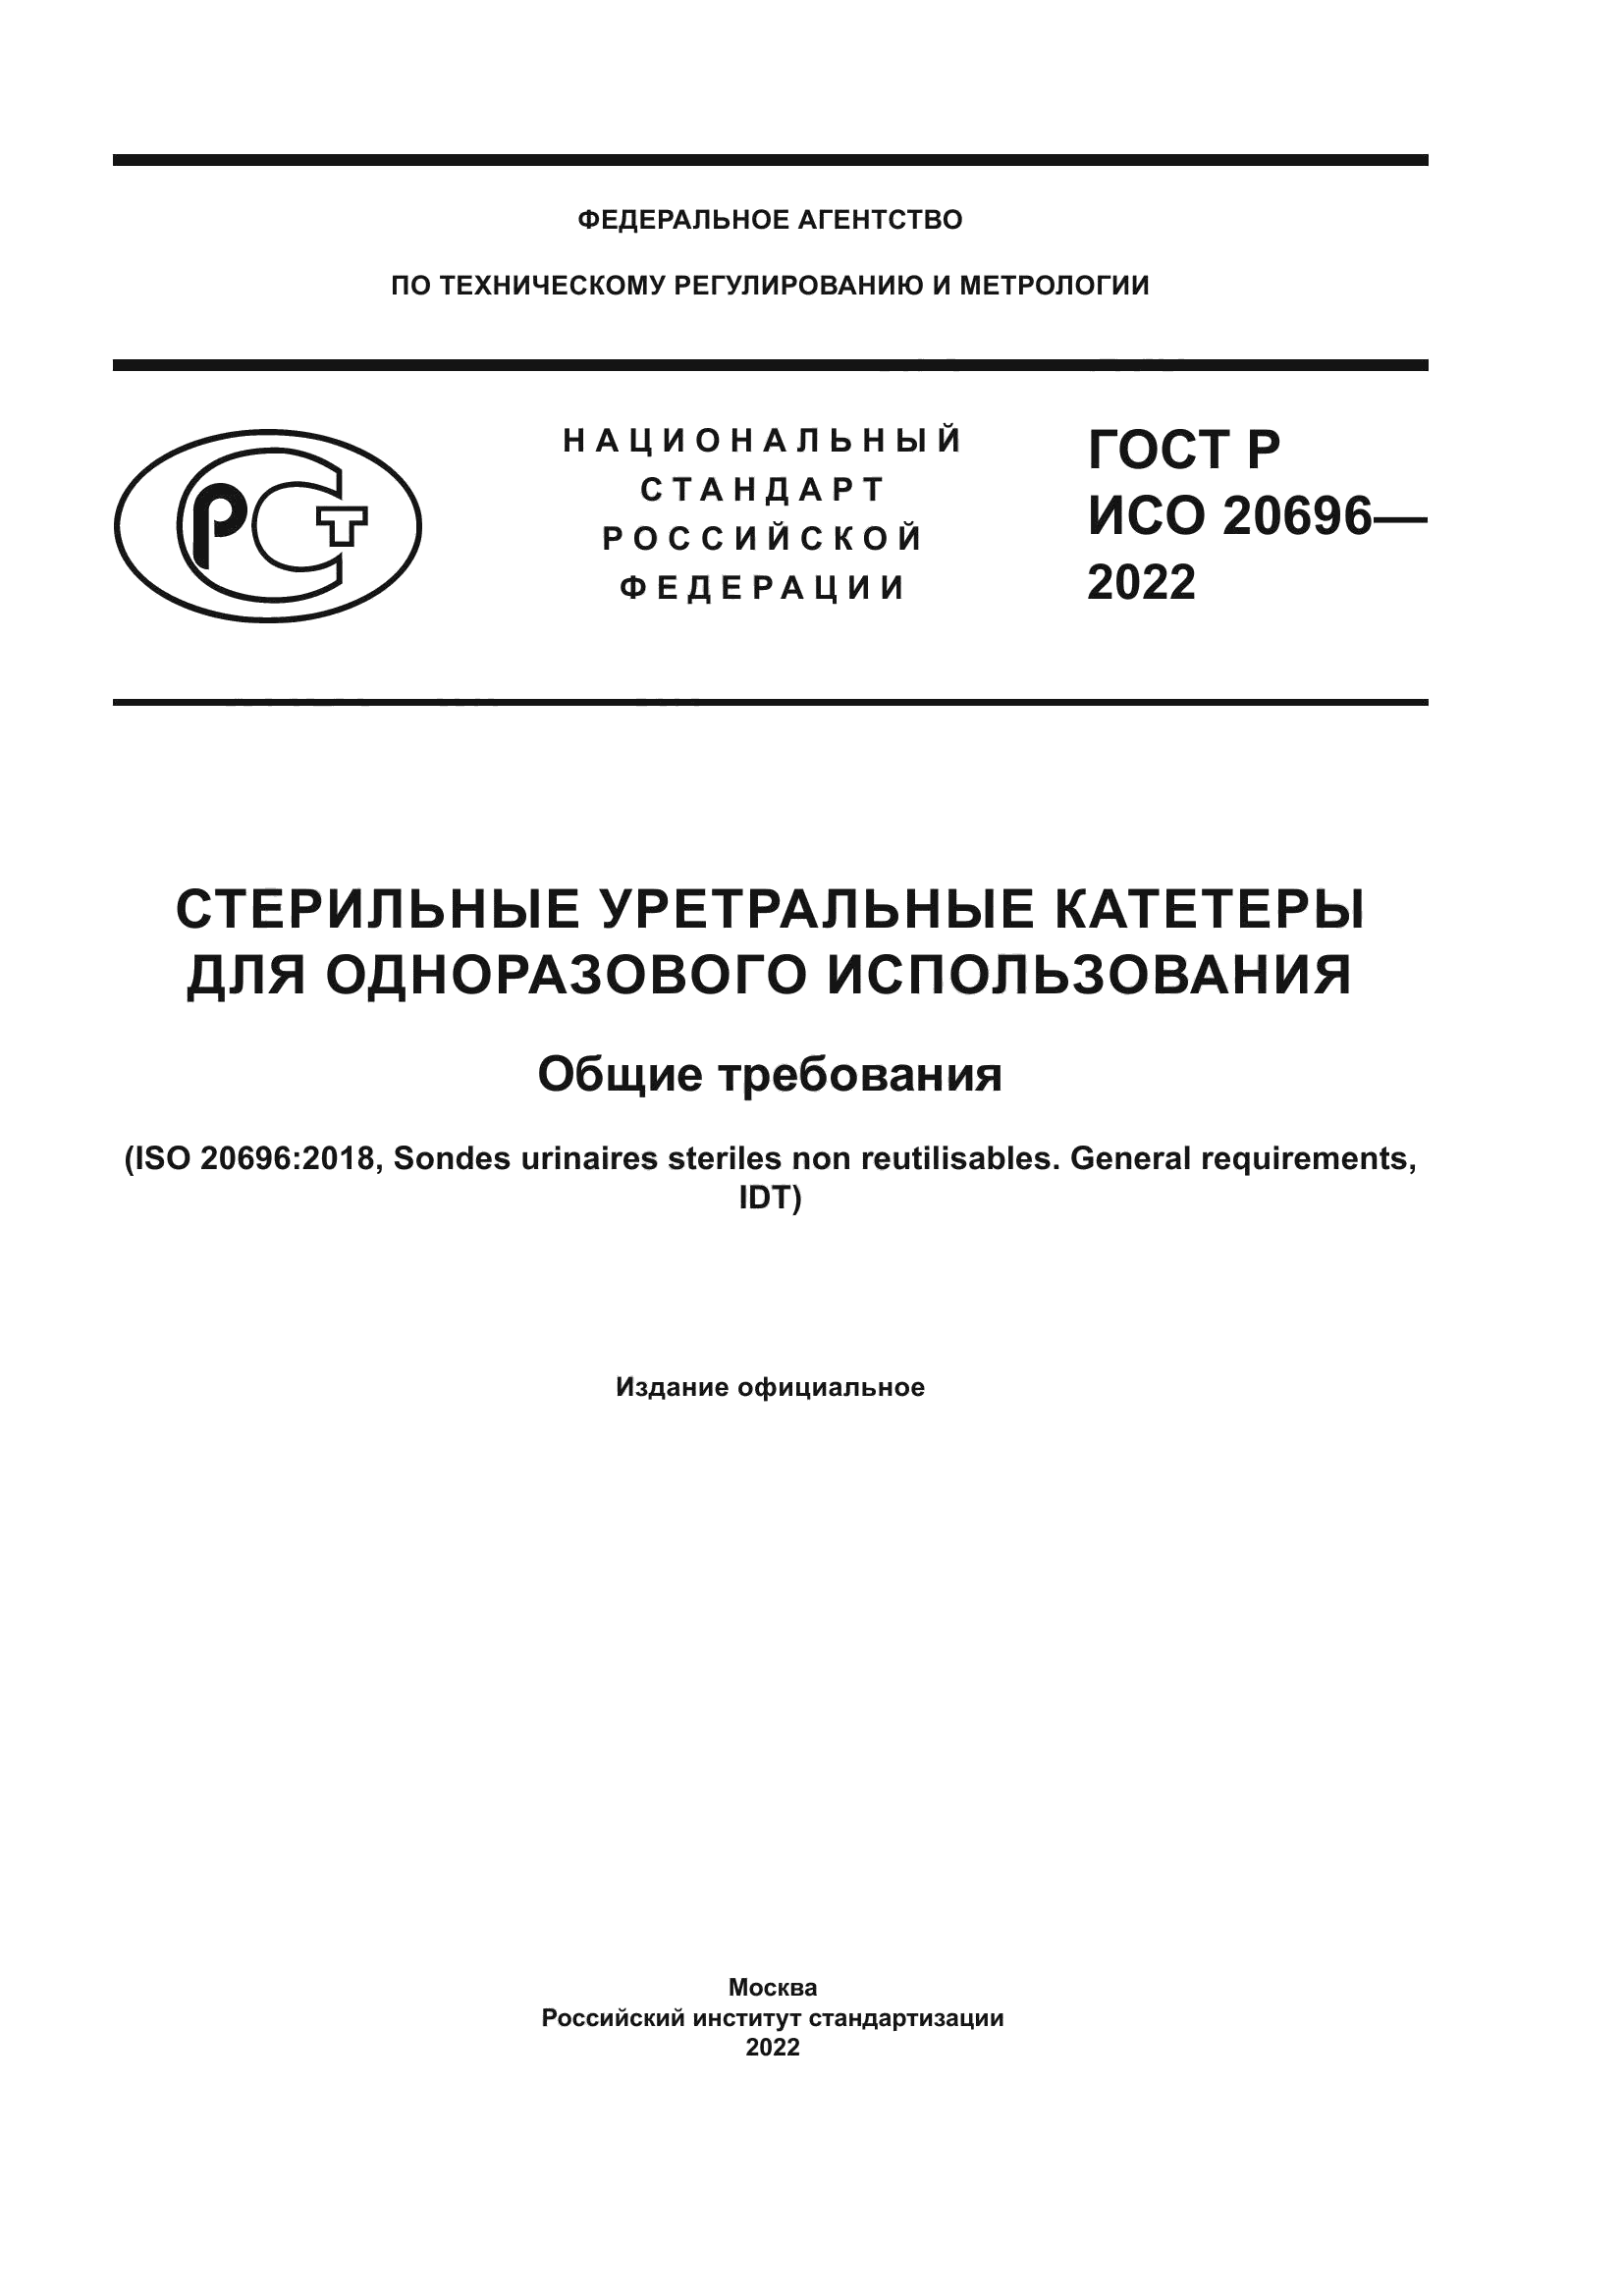 ГОСТ Р ИСО 20696-2022